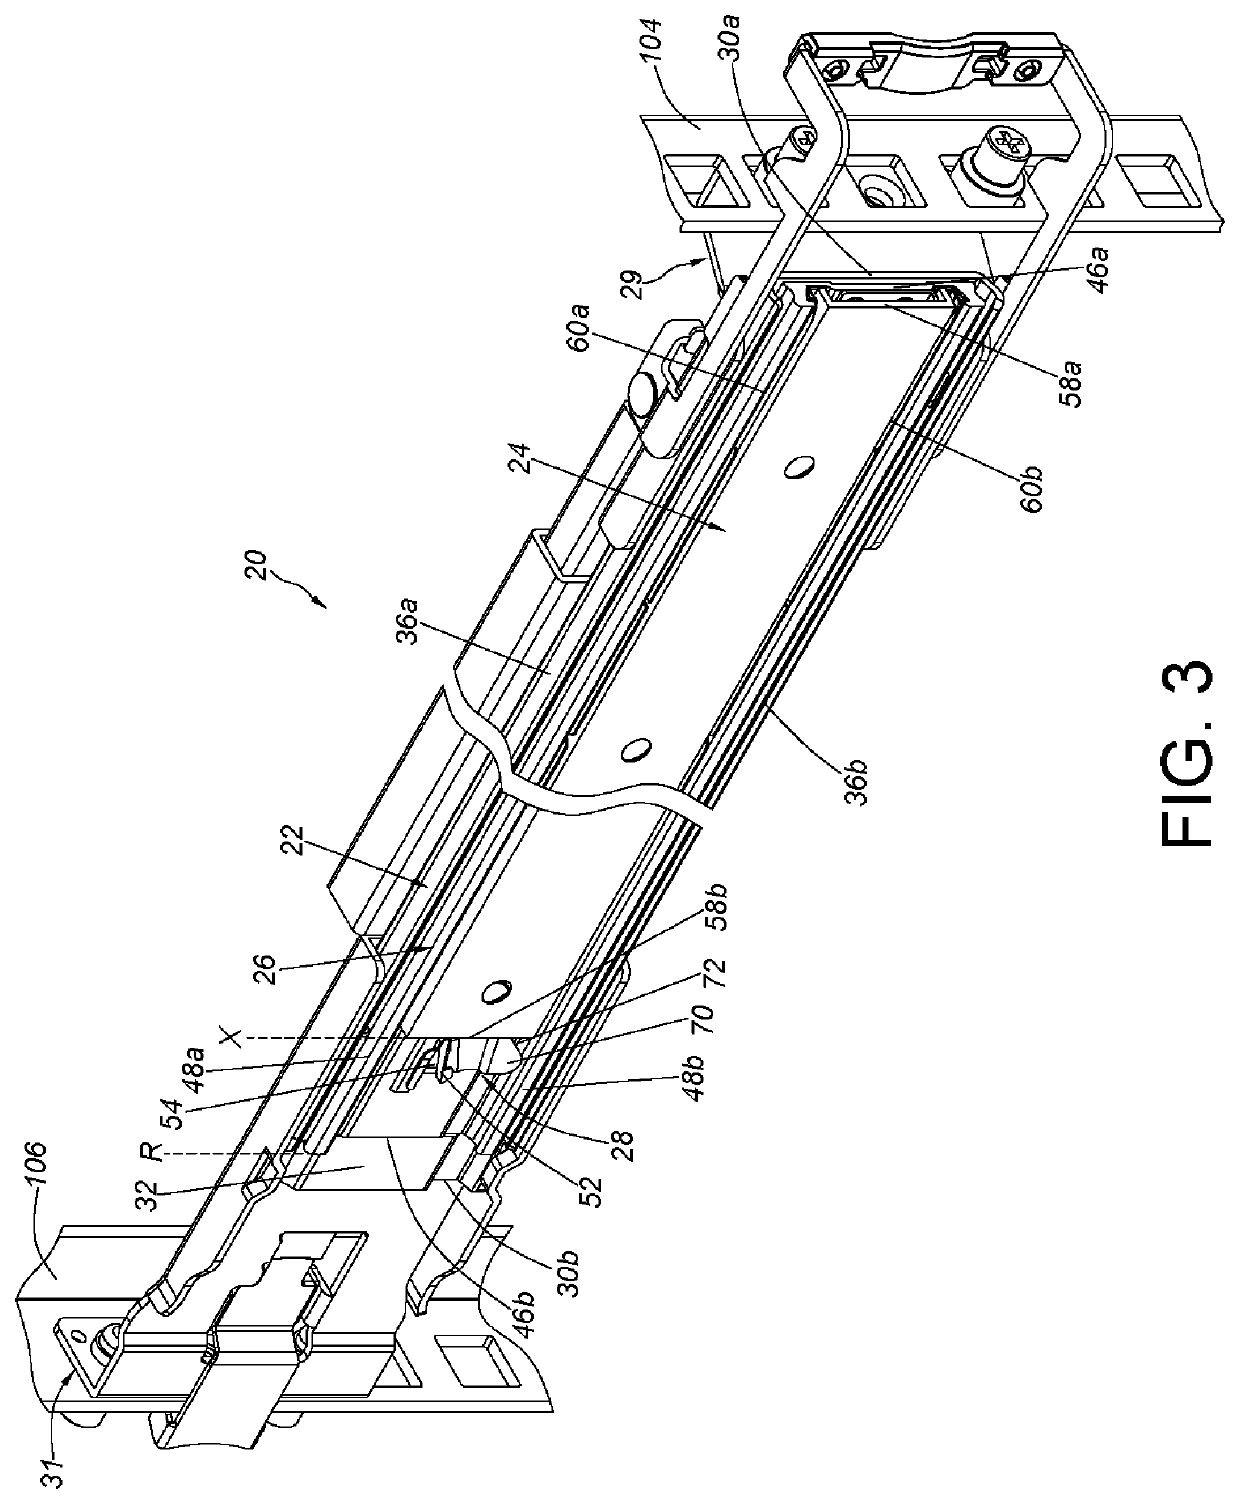 Slide rail assembly